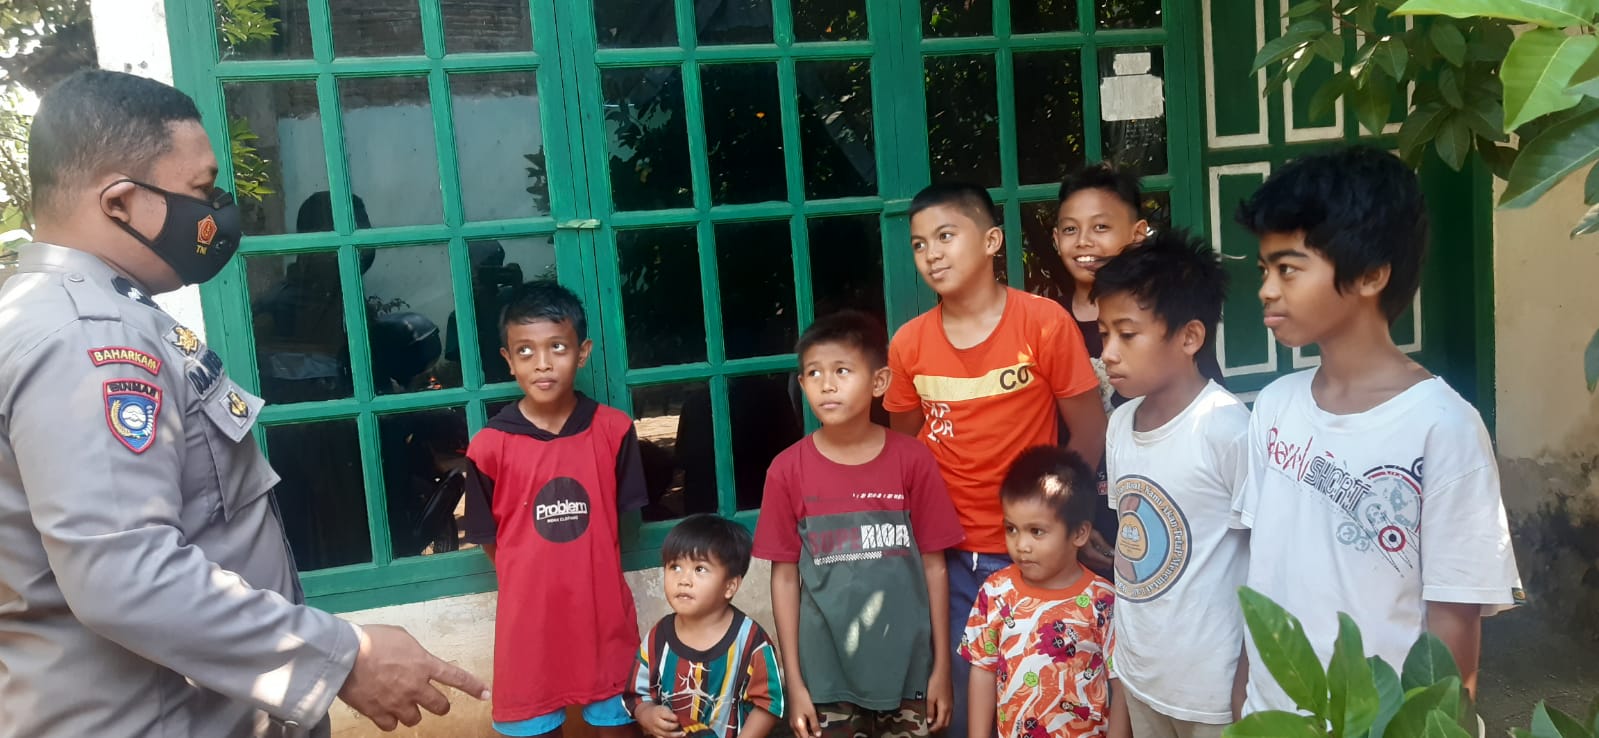 Agar Lebih Dekat, Bhabinkamtibmas Polsek Somba Opu Temui Anak-Anak di Wilayah Binaannya